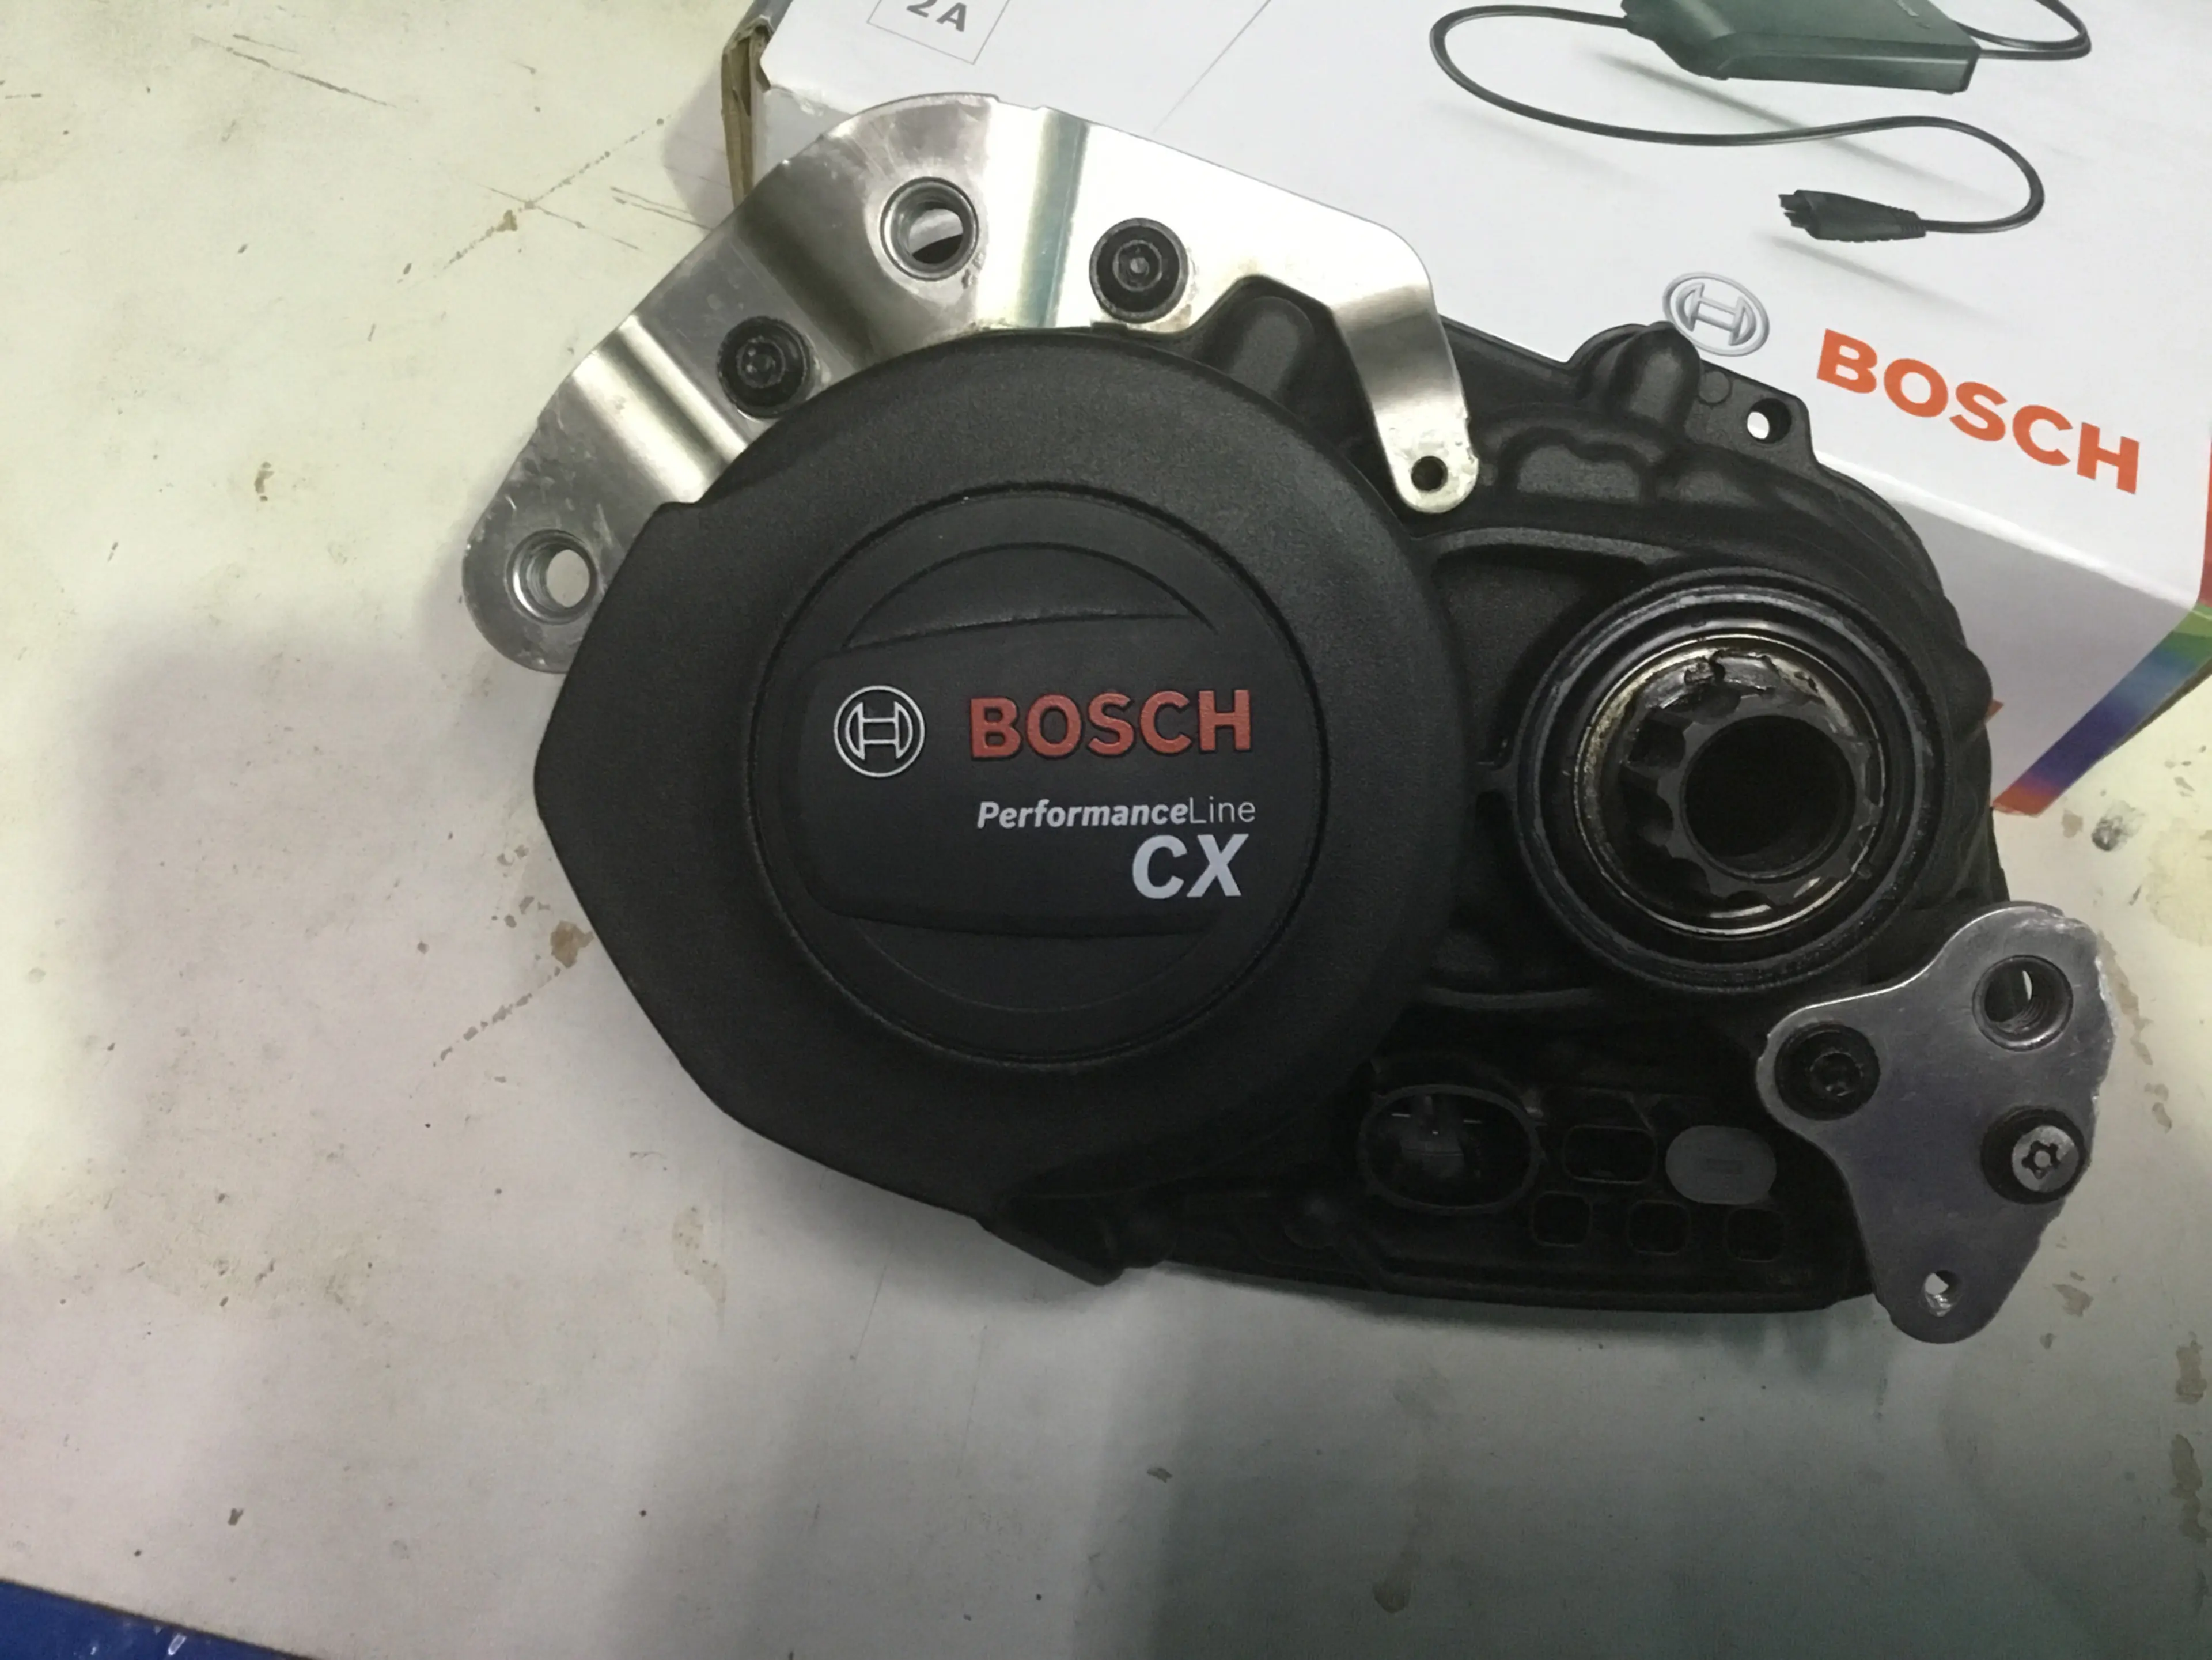 1. Bosch